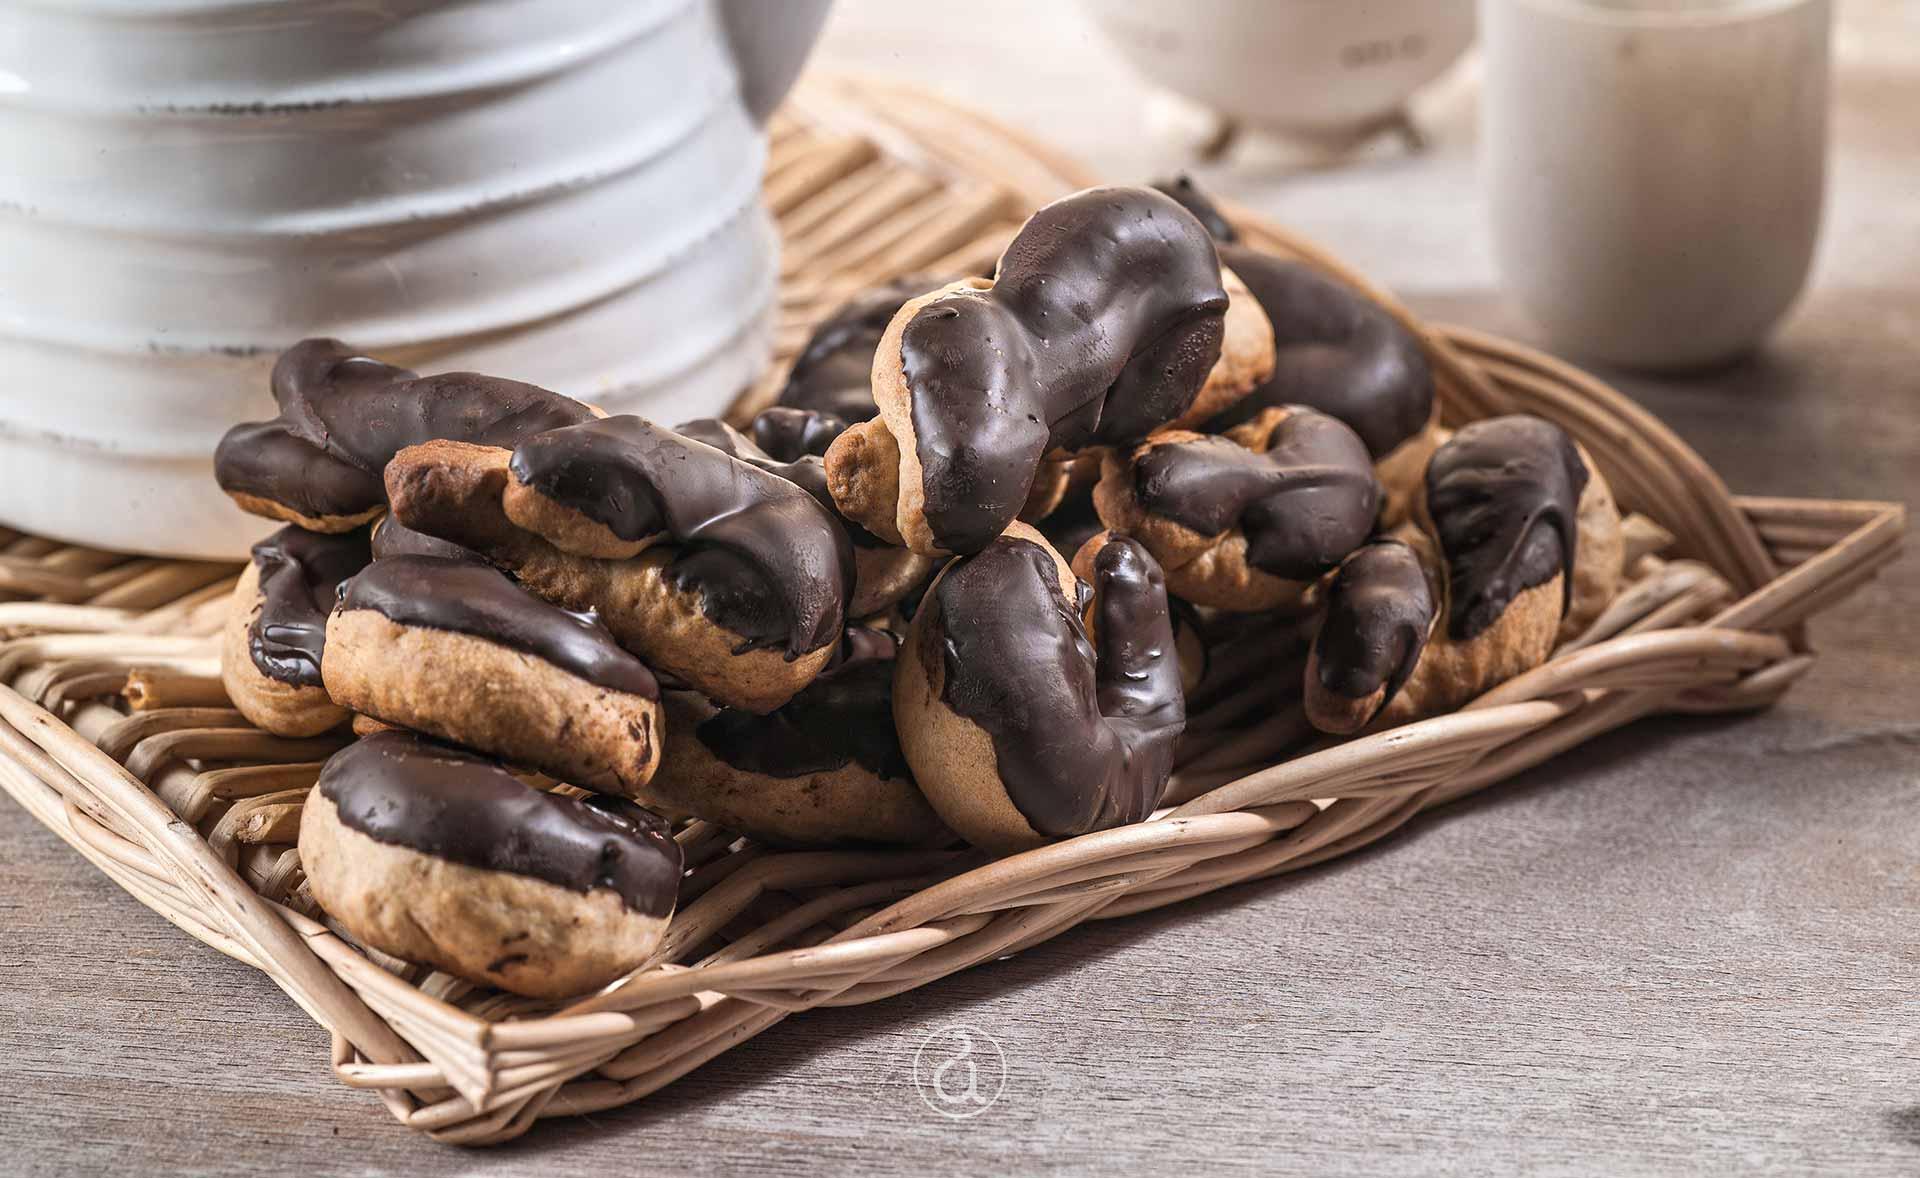 Αργυρώ Μπαρμπαρίγου | Εύκολα, νηστίσιμα κουλουράκια με σοκολάτα, ιδανικά για τον καφέ σας! κουλουράκια κανέλας με επικάλυψη σοκολάτας